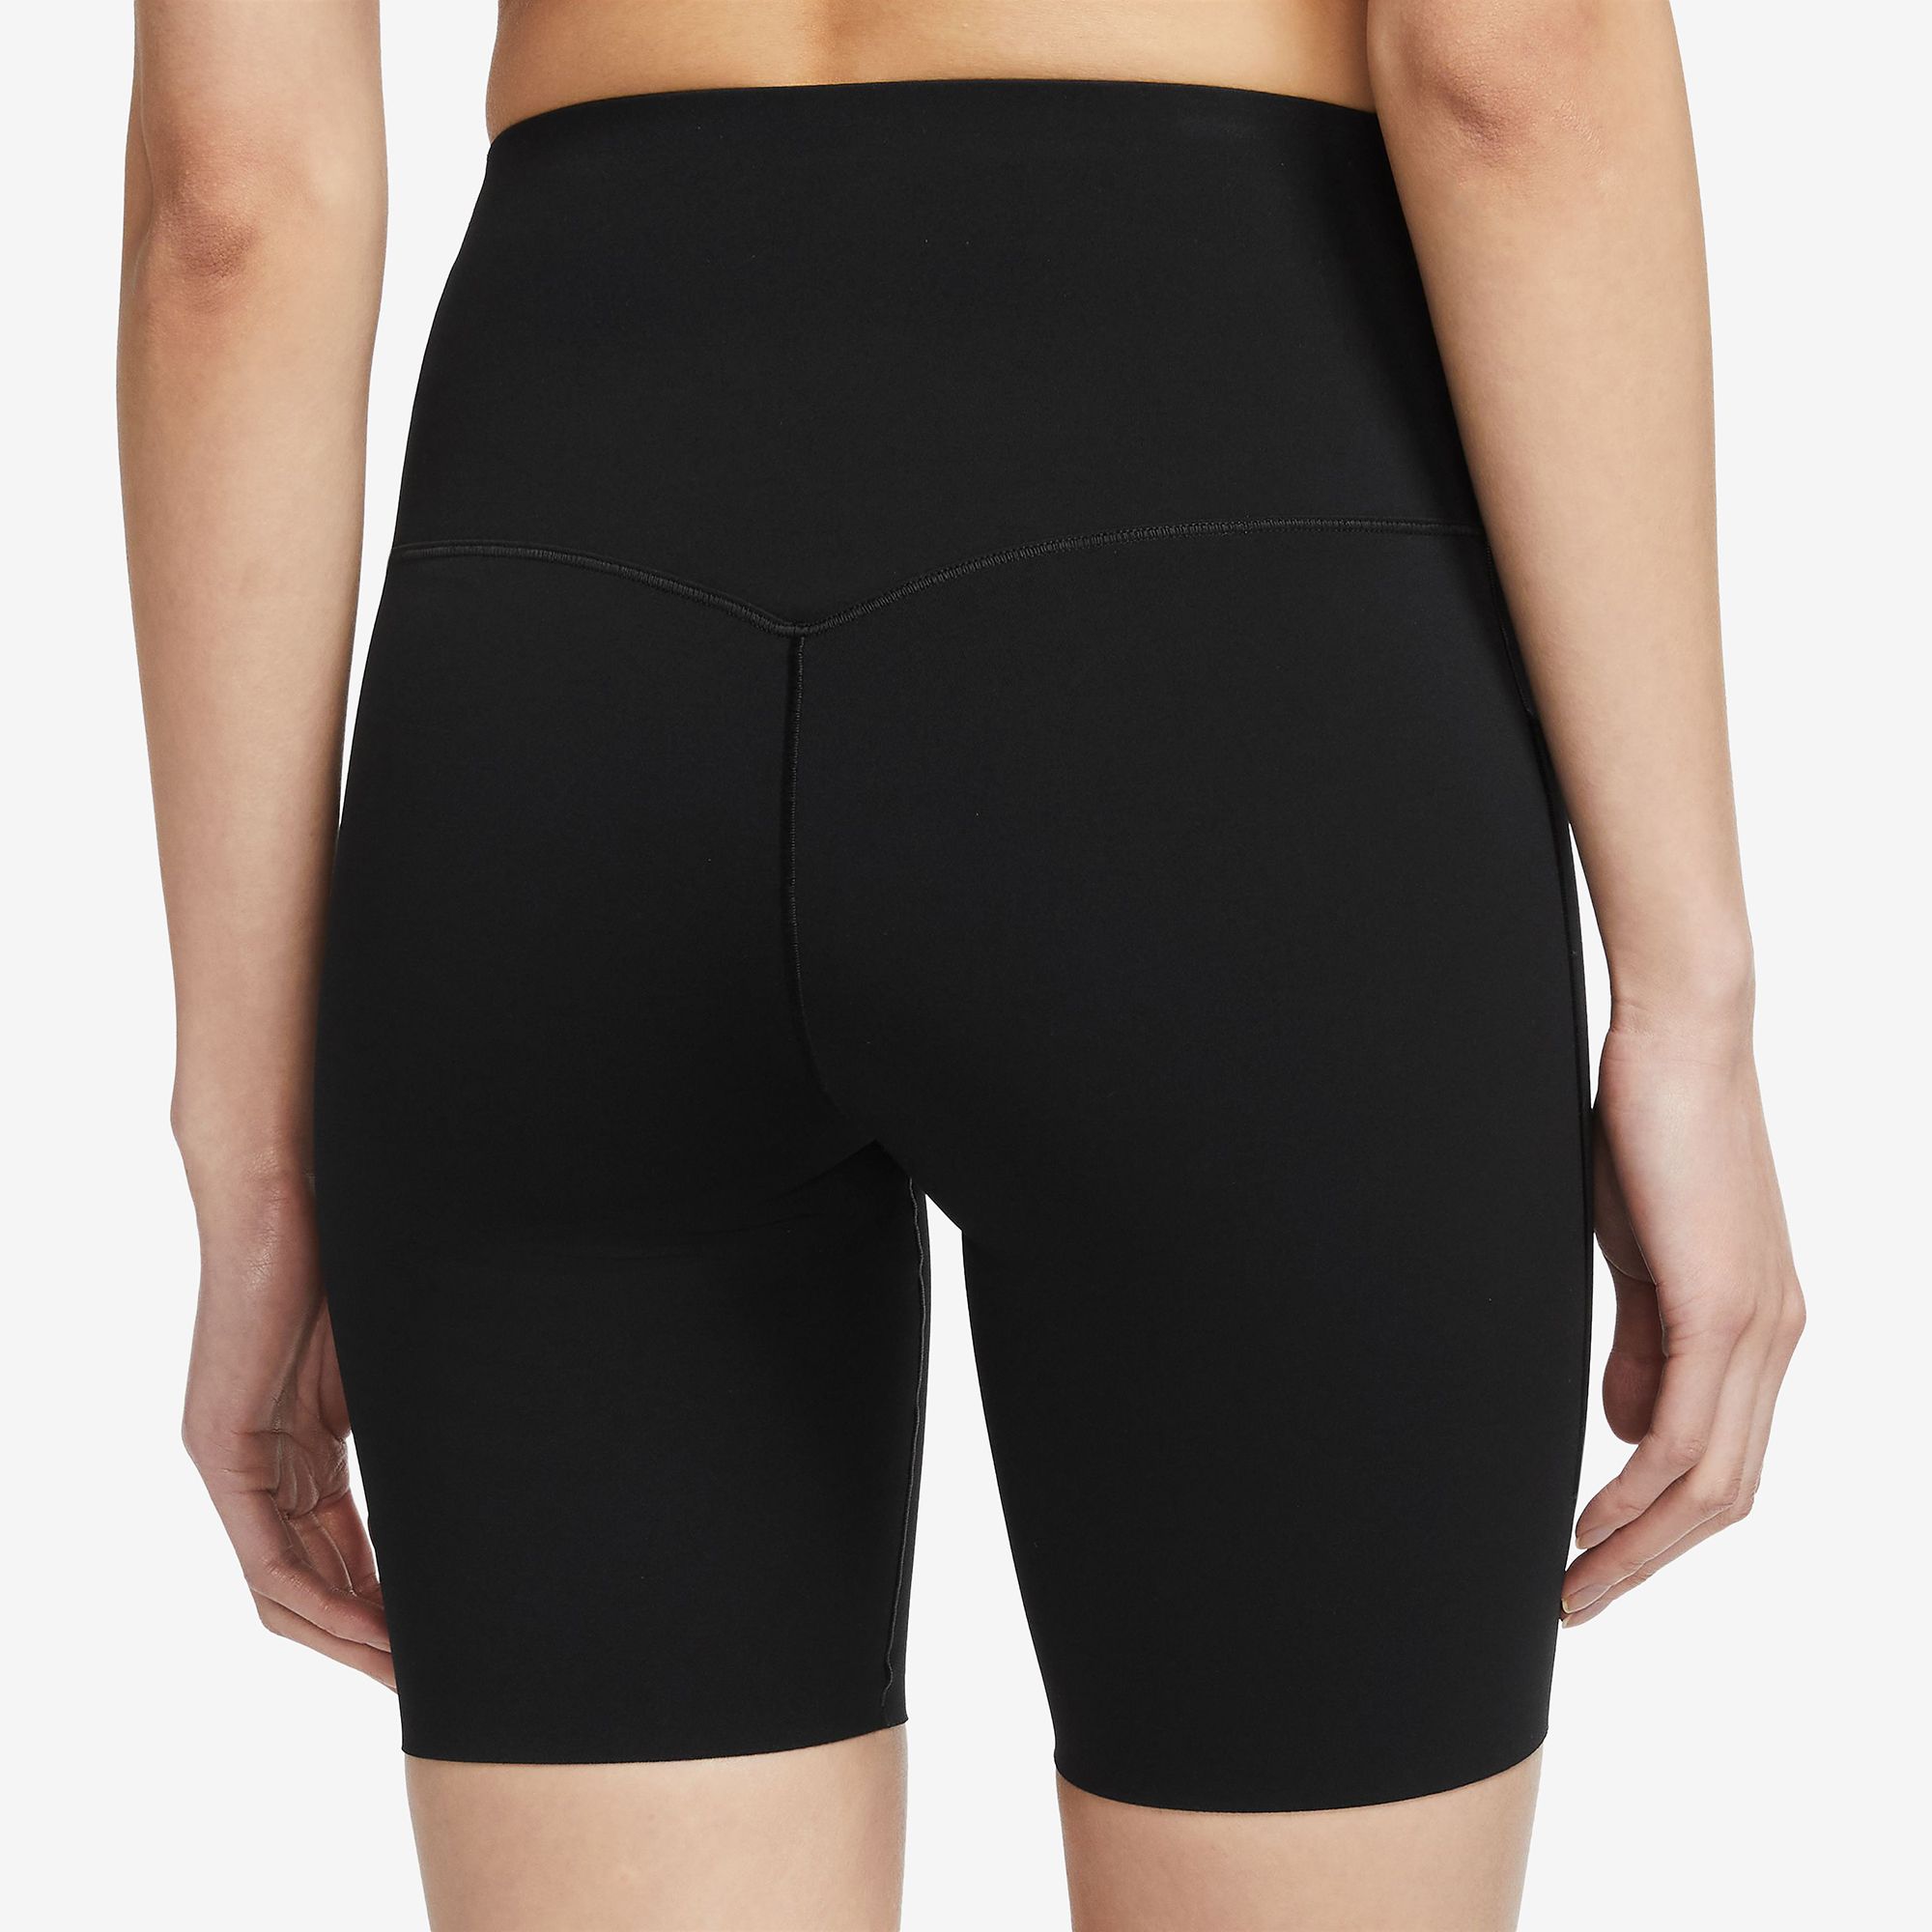 Nike Women's Universa Medium-Support High-Waisted 8" Biker Shorts